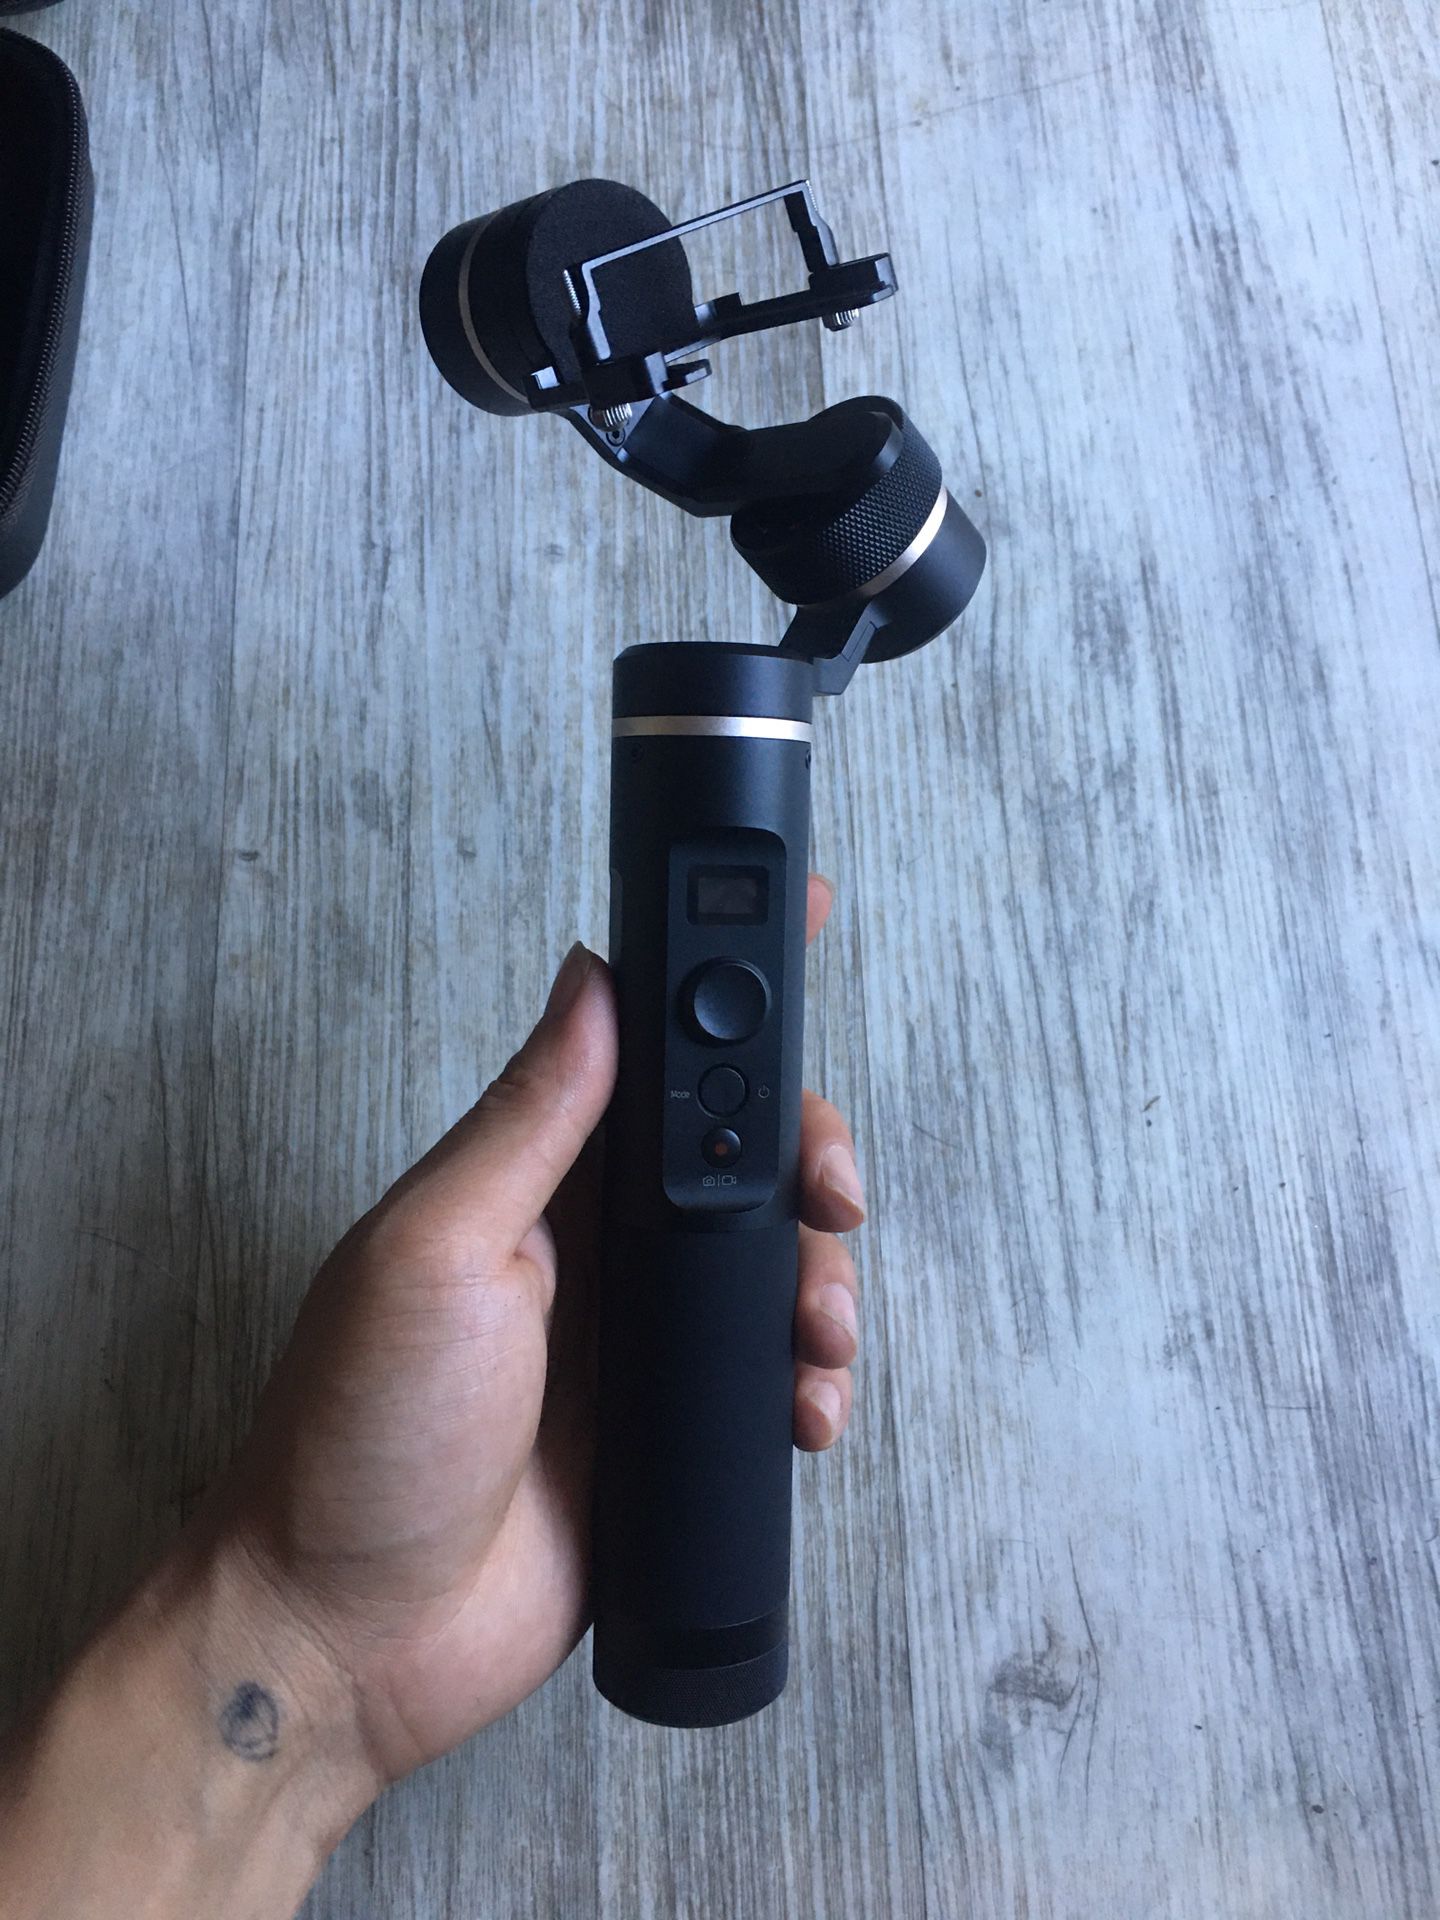 Feiyu G6 GoPro camera gimble